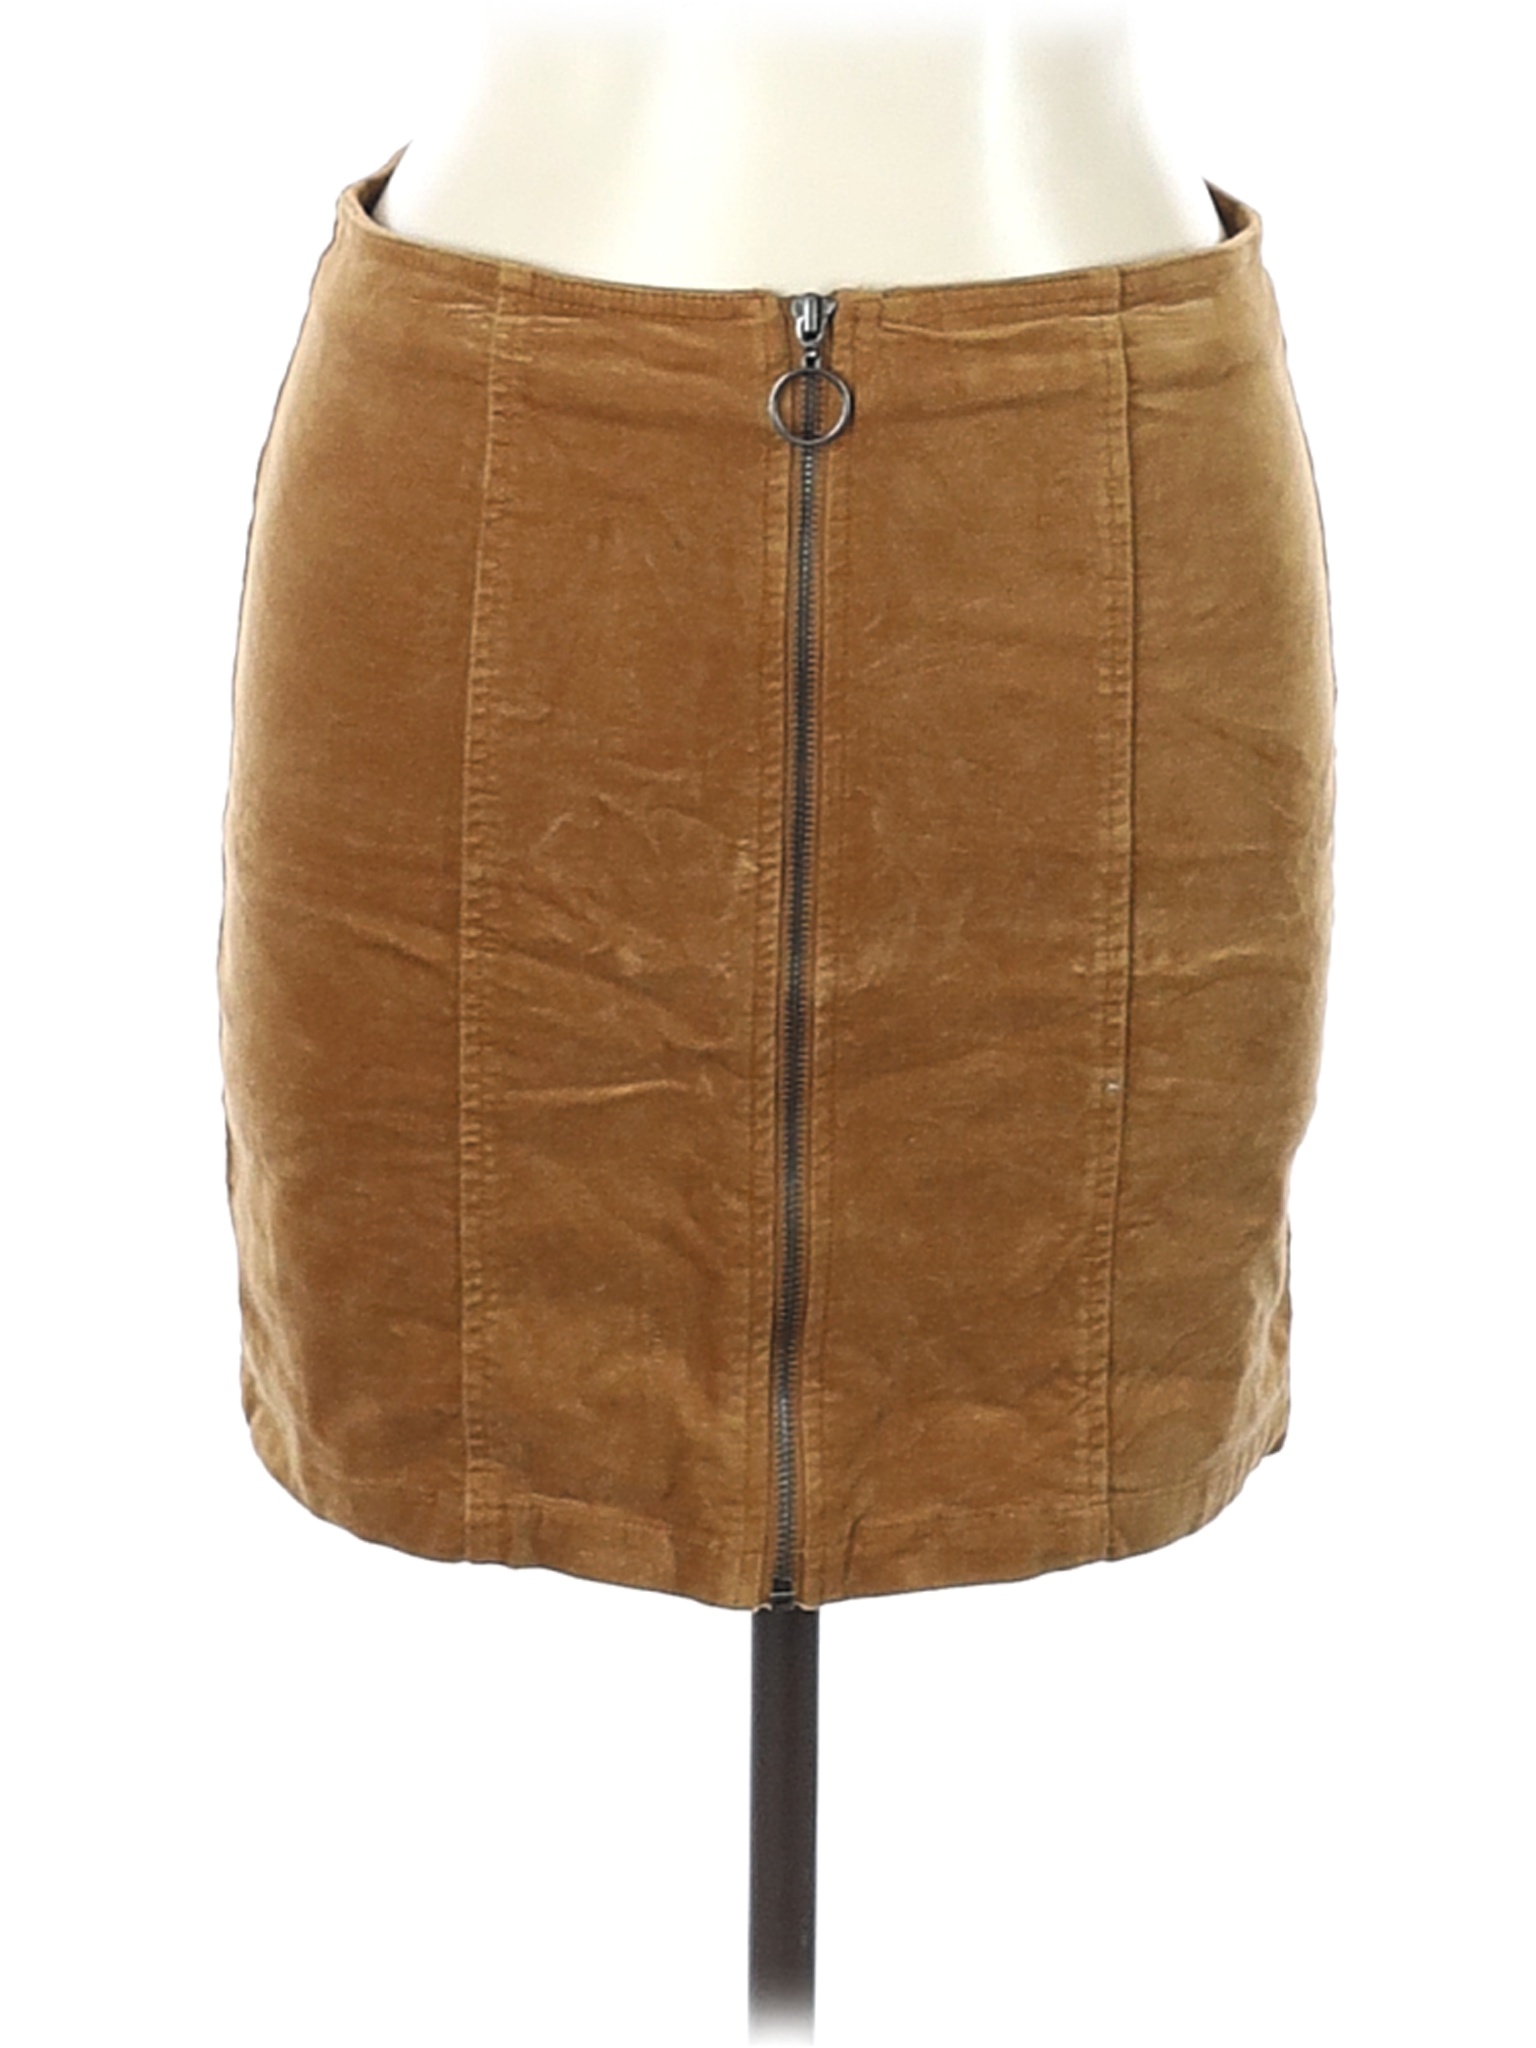 Forever 21 Women Brown Casual Skirt L | eBay